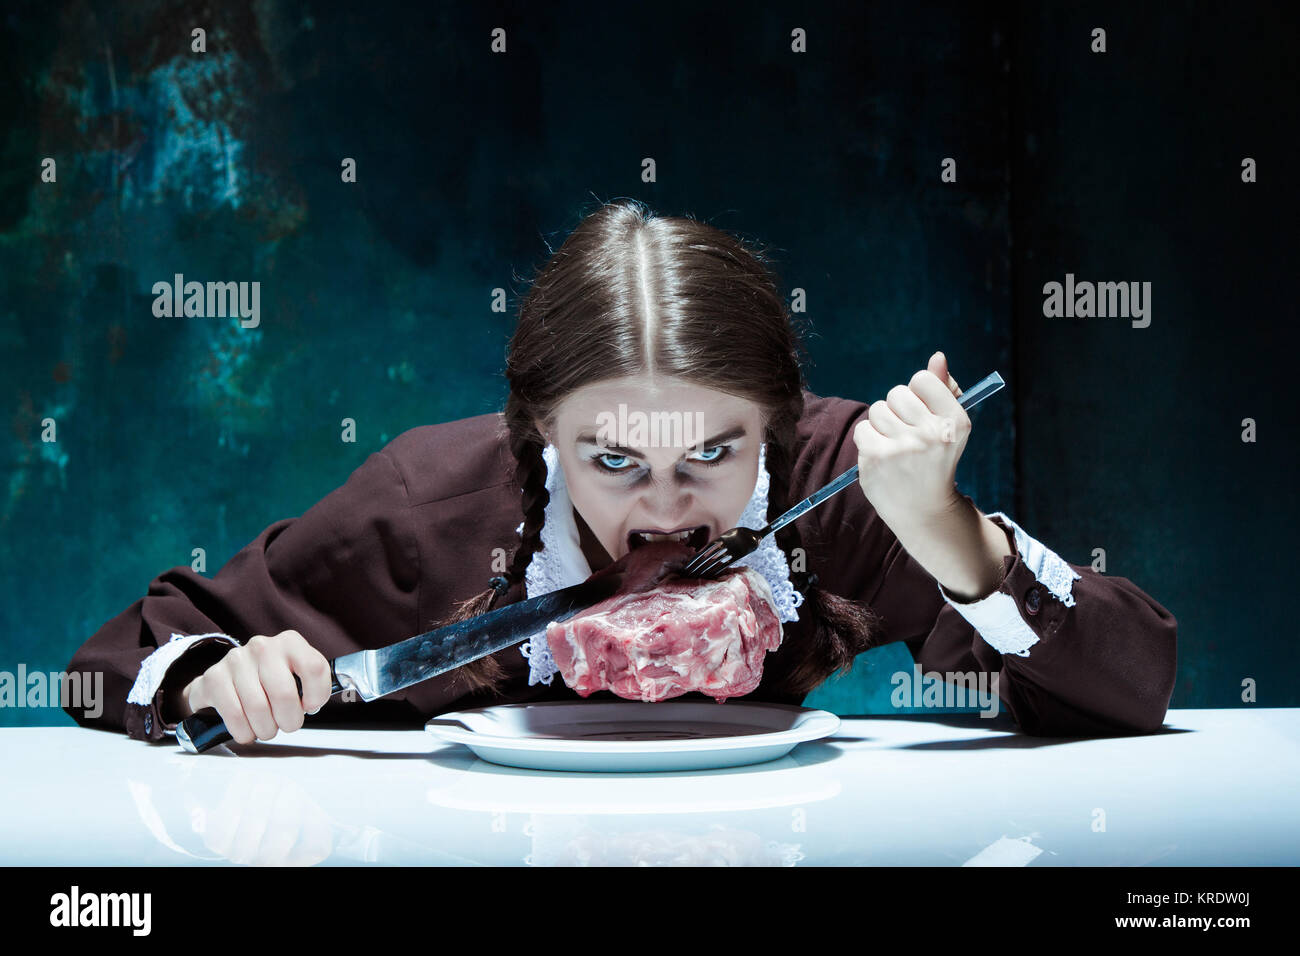 Blutige Halloween-Thema: Verrücktes Mädchen mit Messer, Gabel und Fleisch Stockfoto